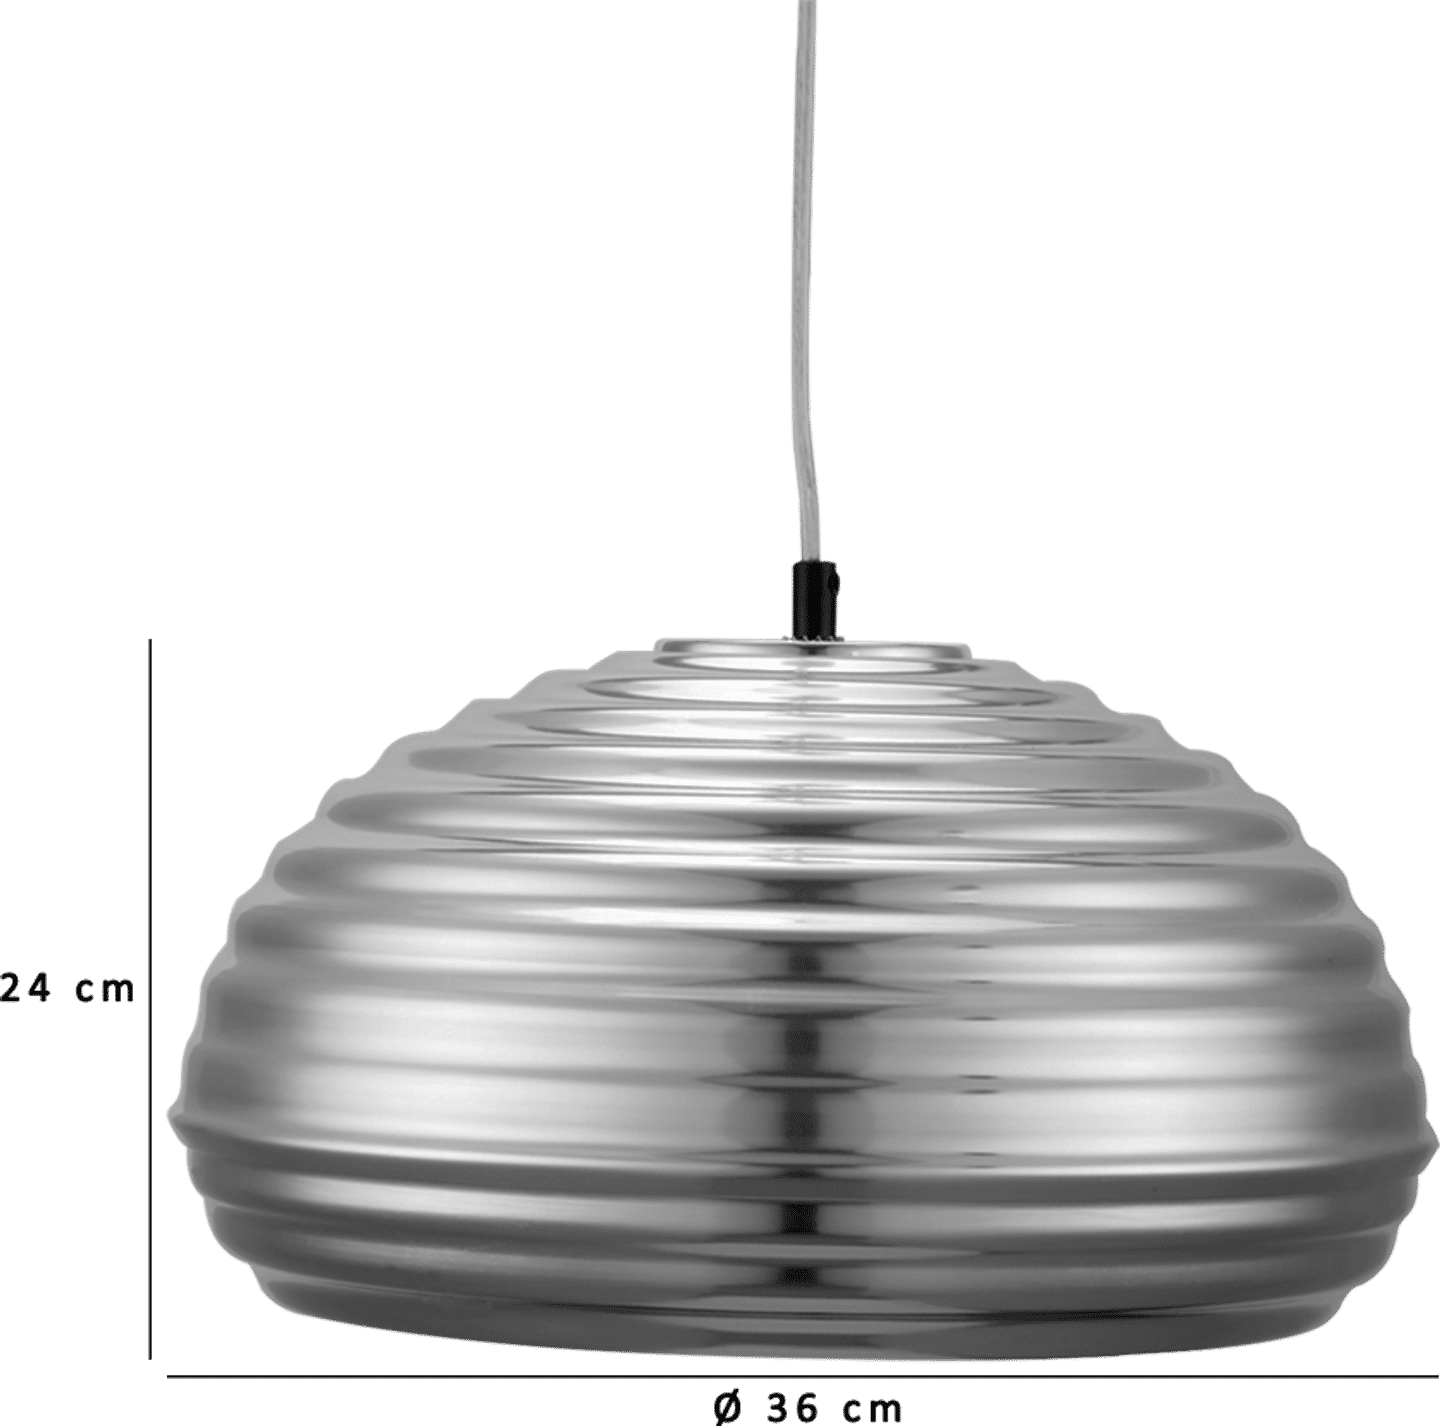 Splugen Brewing Lamp Aluminium image.